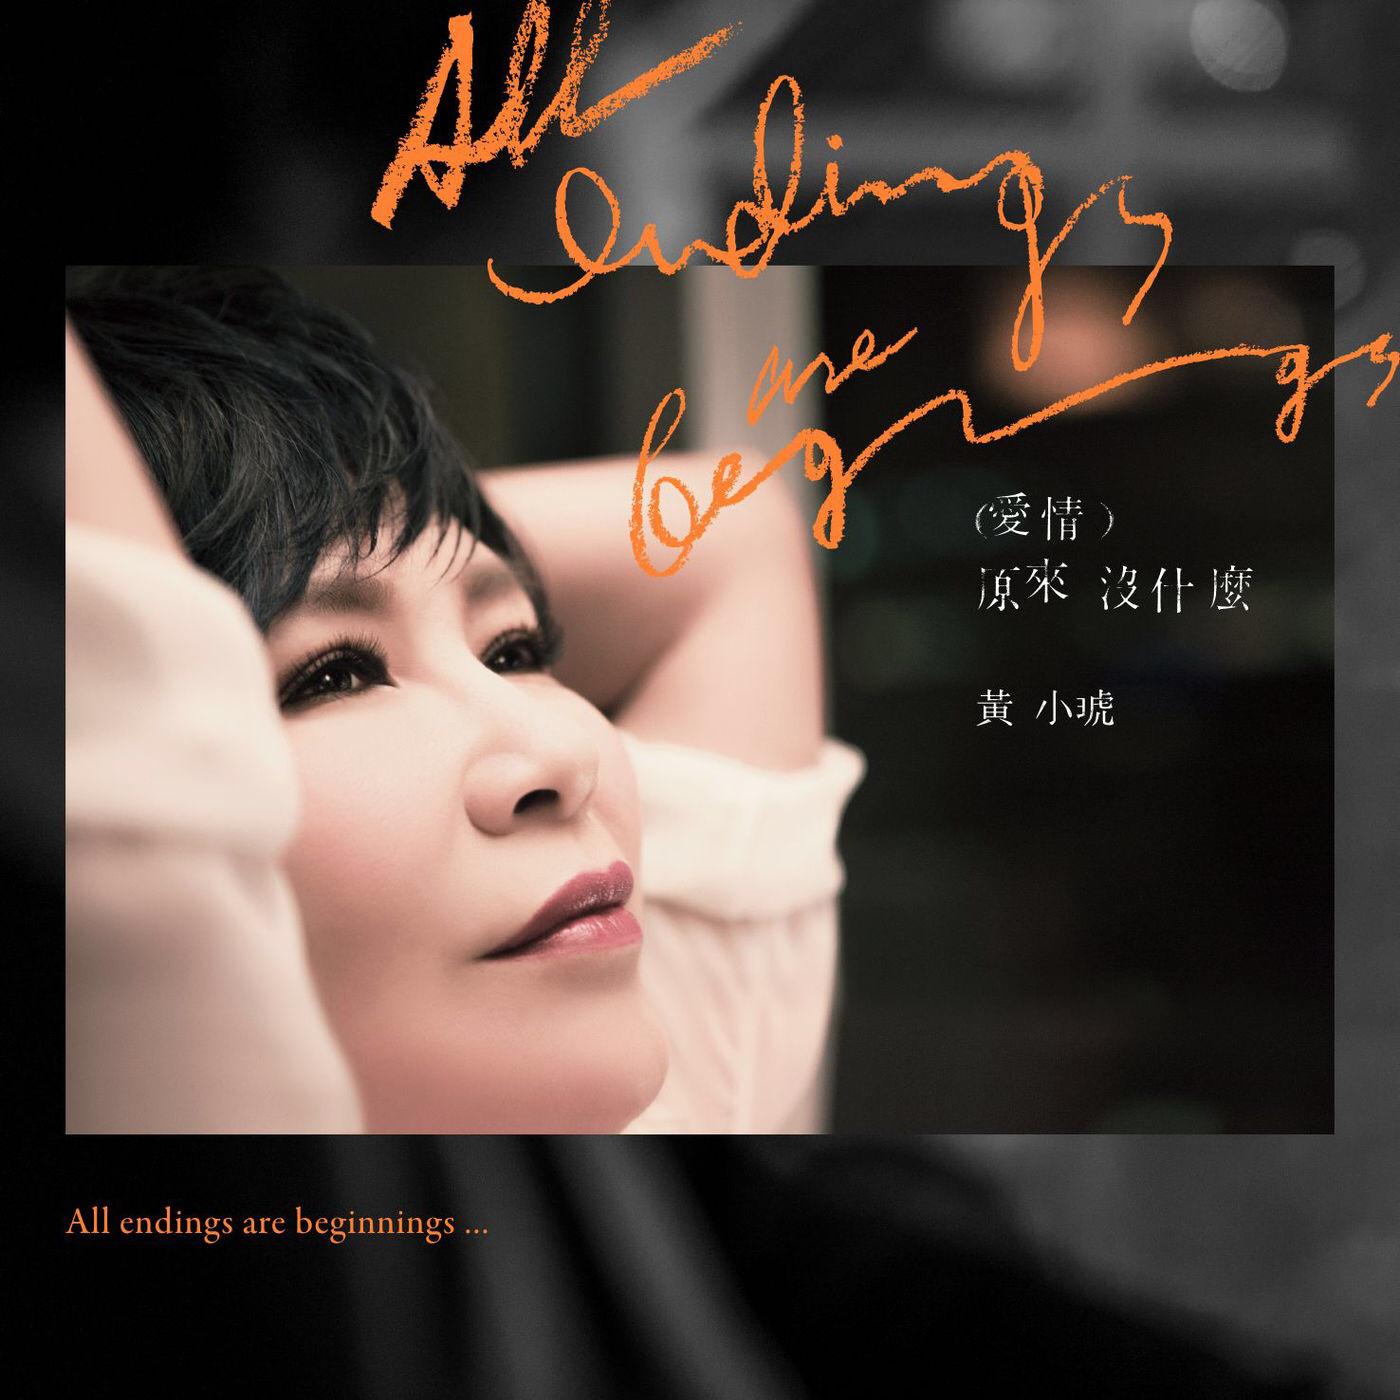 心酸的成熟歌词 歌手黄小琥-专辑爱情原来没什么-单曲《心酸的成熟》LRC歌词下载